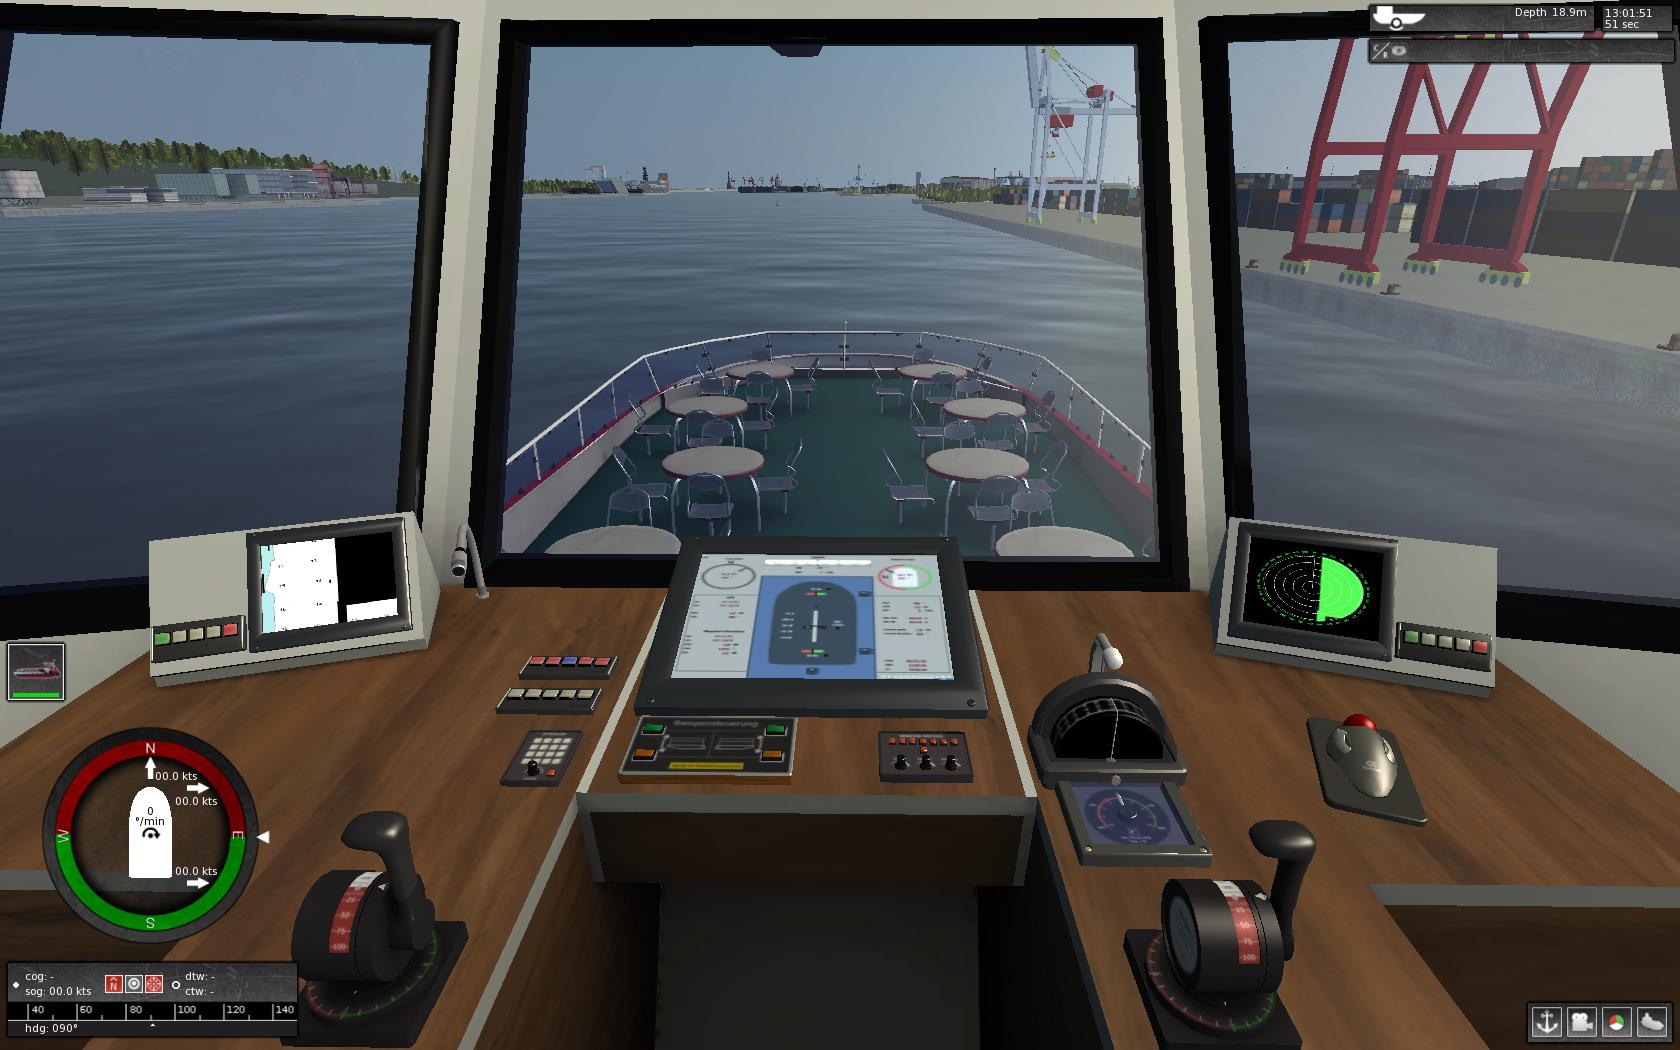 european ship simulator xbox 360